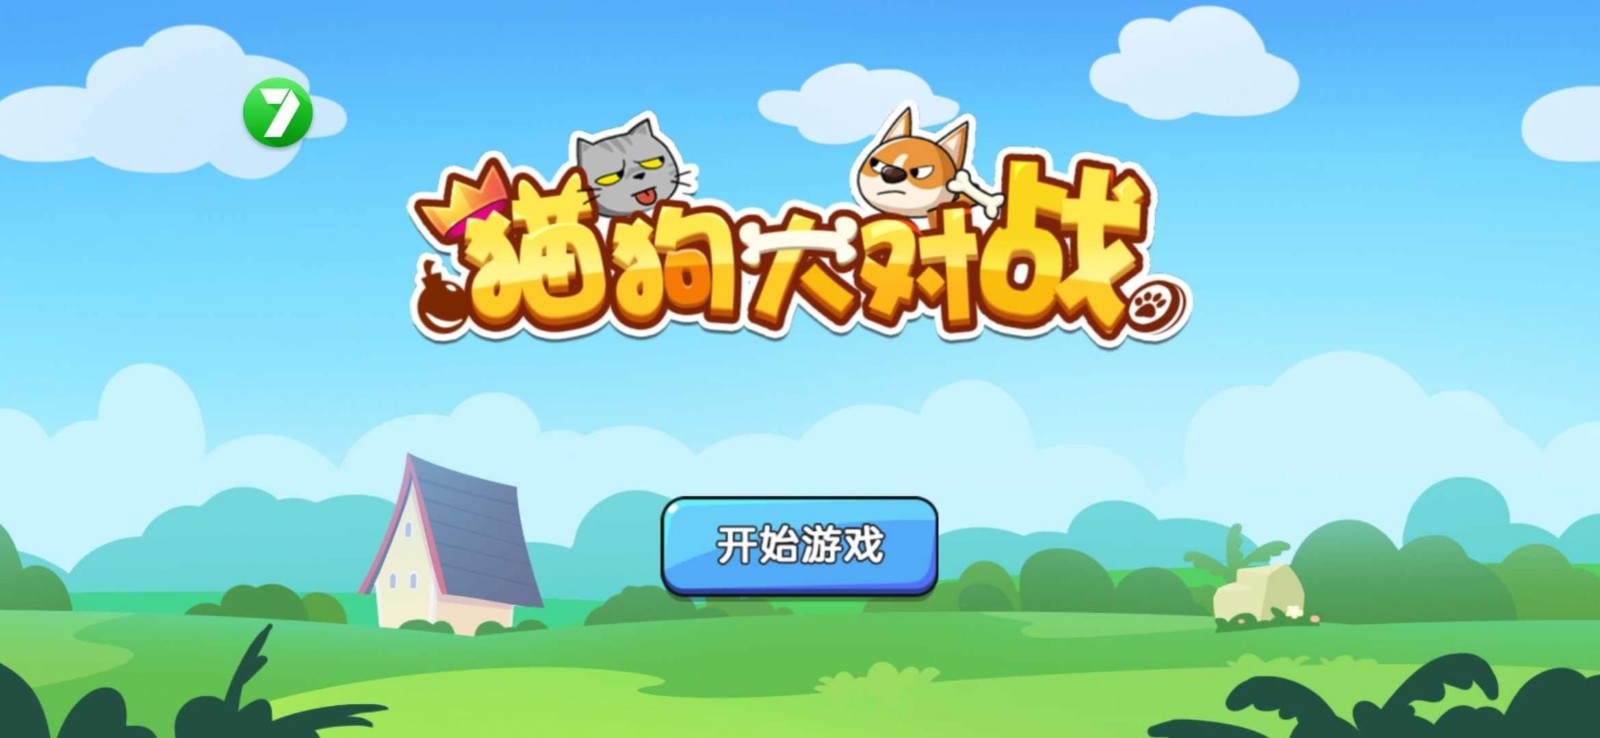 猫狗大对战最新游戏下载-猫狗大对战安卓版下载